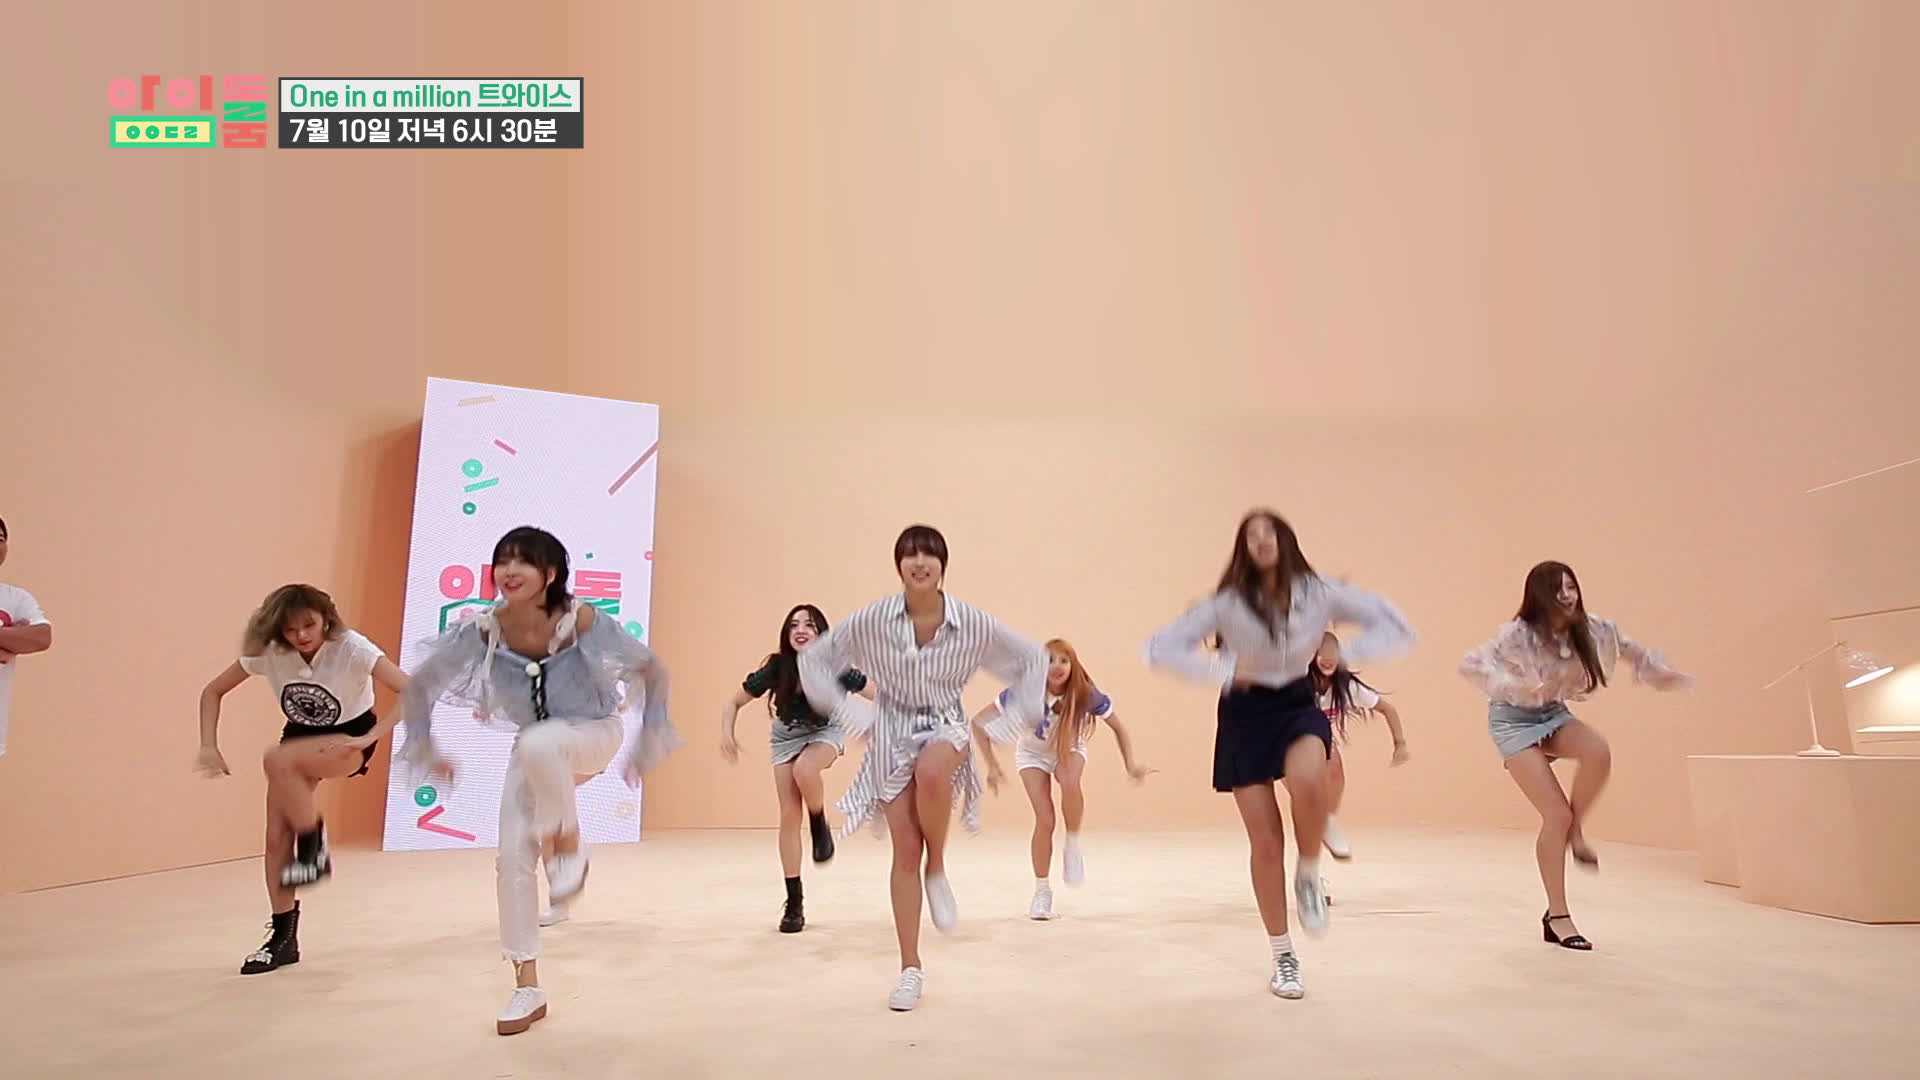 <아이돌룸> 10회 선공개 - 트와이스 'Dance the night away' 신곡 TV 최초 공개! TWICE's first performance on TV